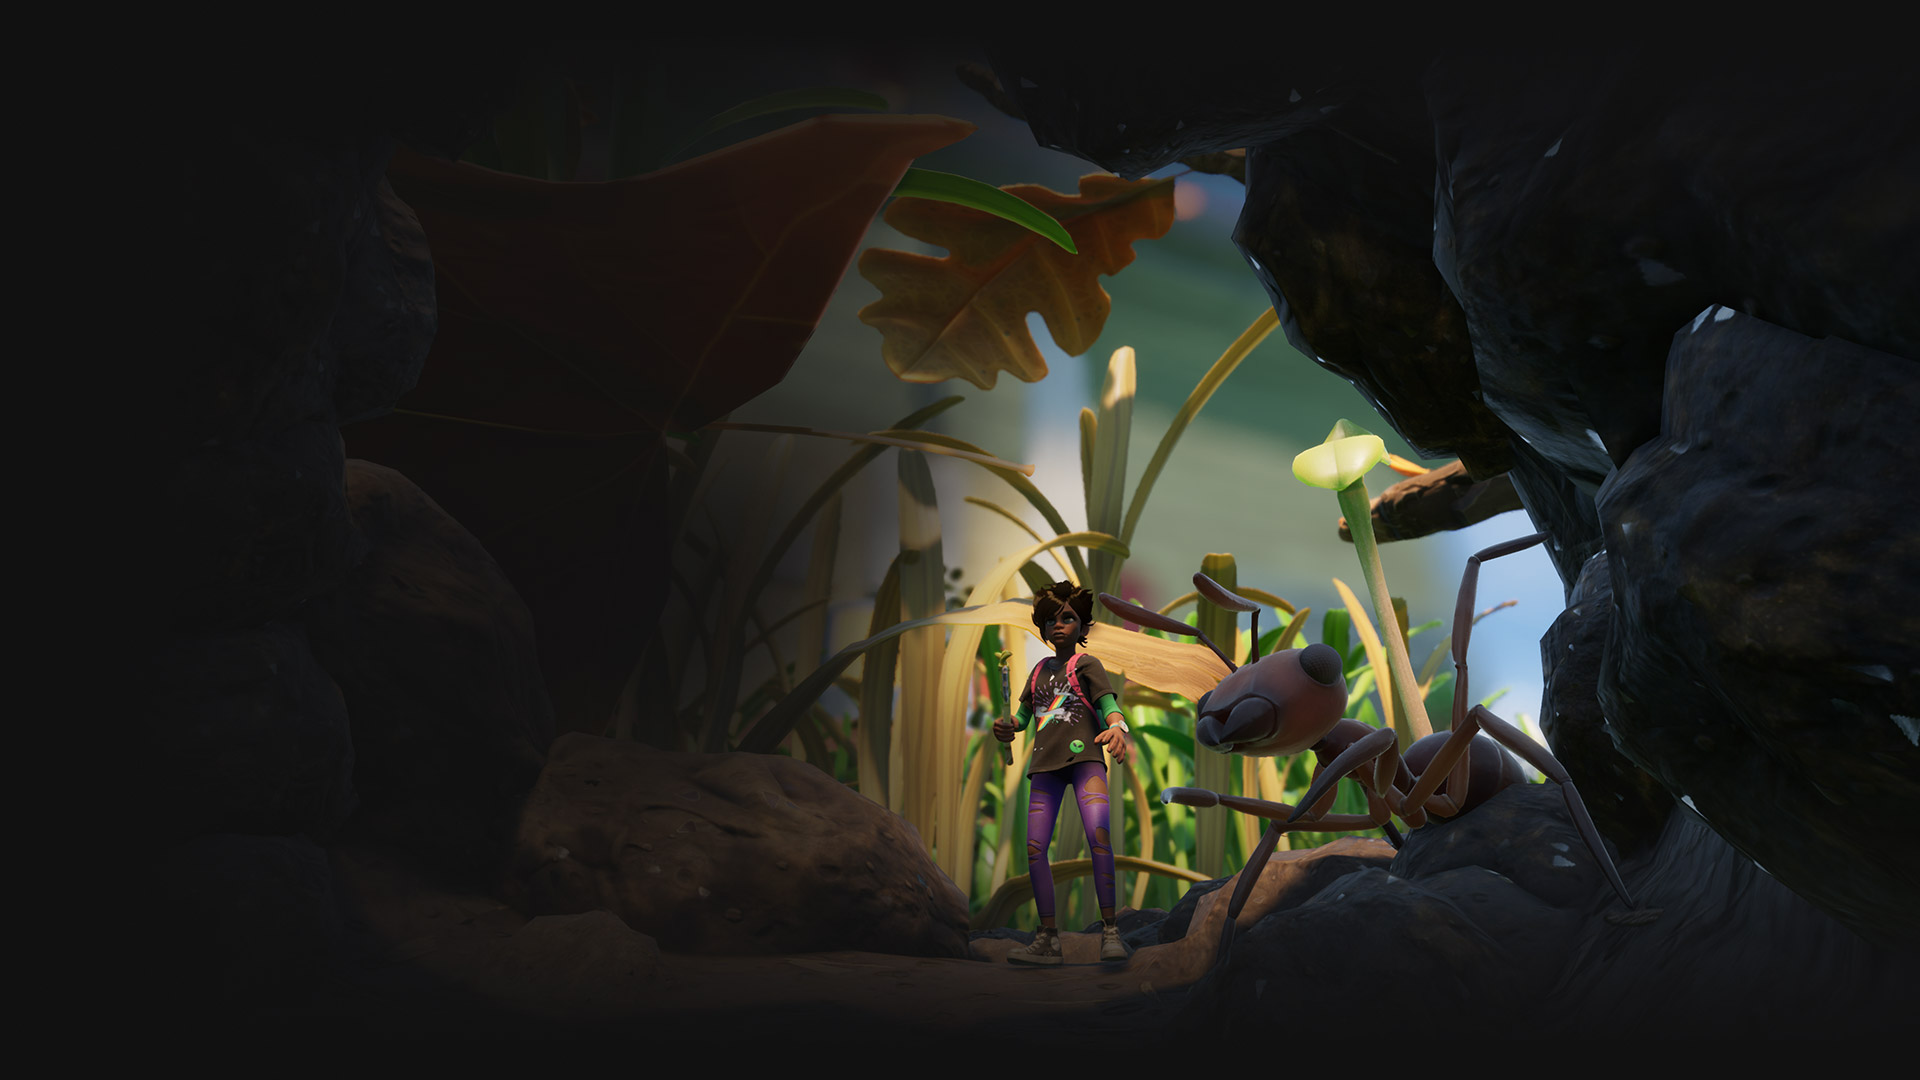 Uma personagem que empunha um pau encontra uma formiga gigante numa cena de Grounded